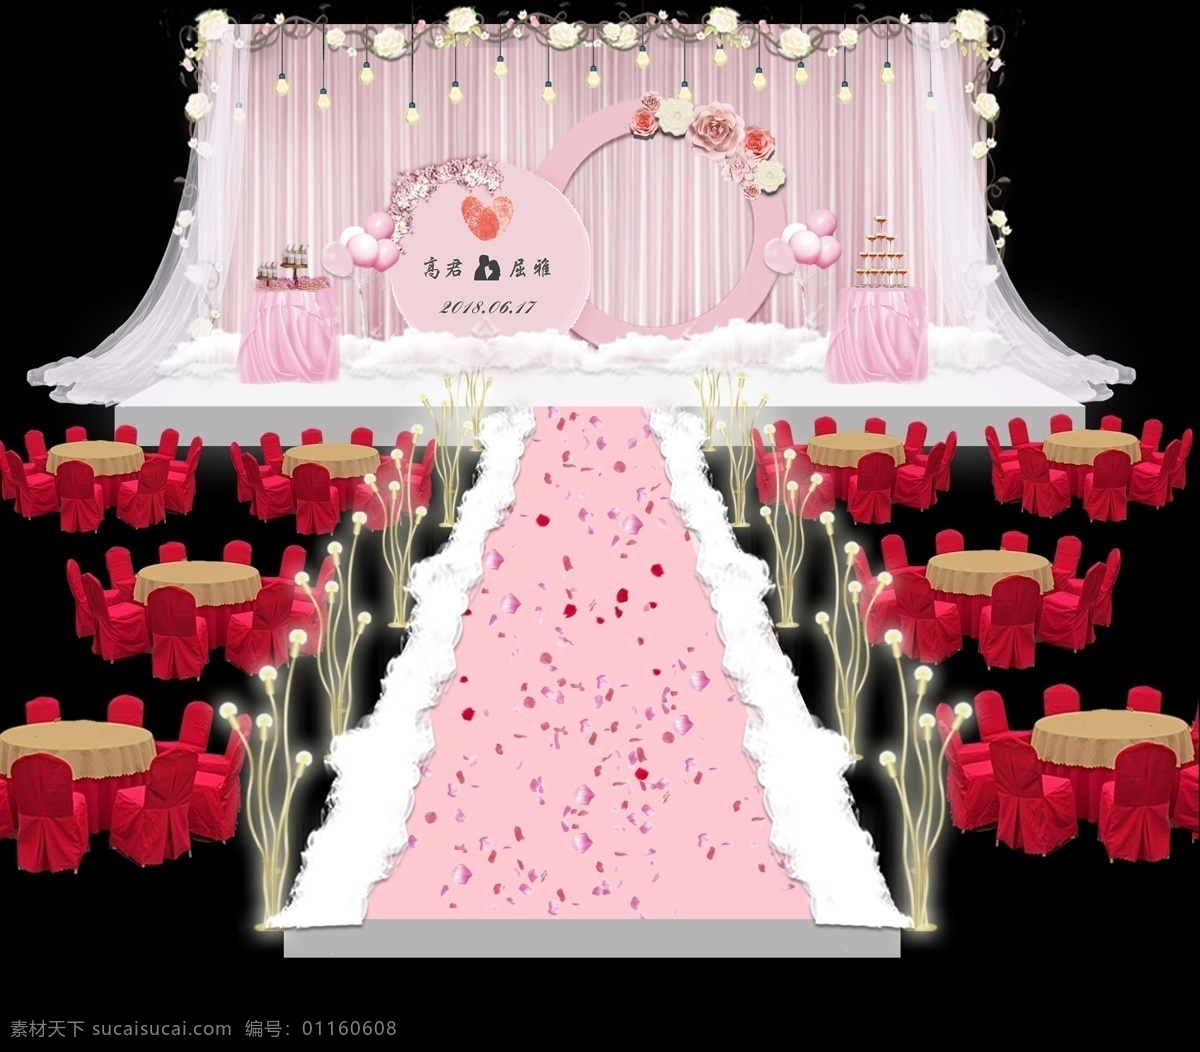 粉色 婚礼 现场 效果图 花环 婚礼效果图 立体